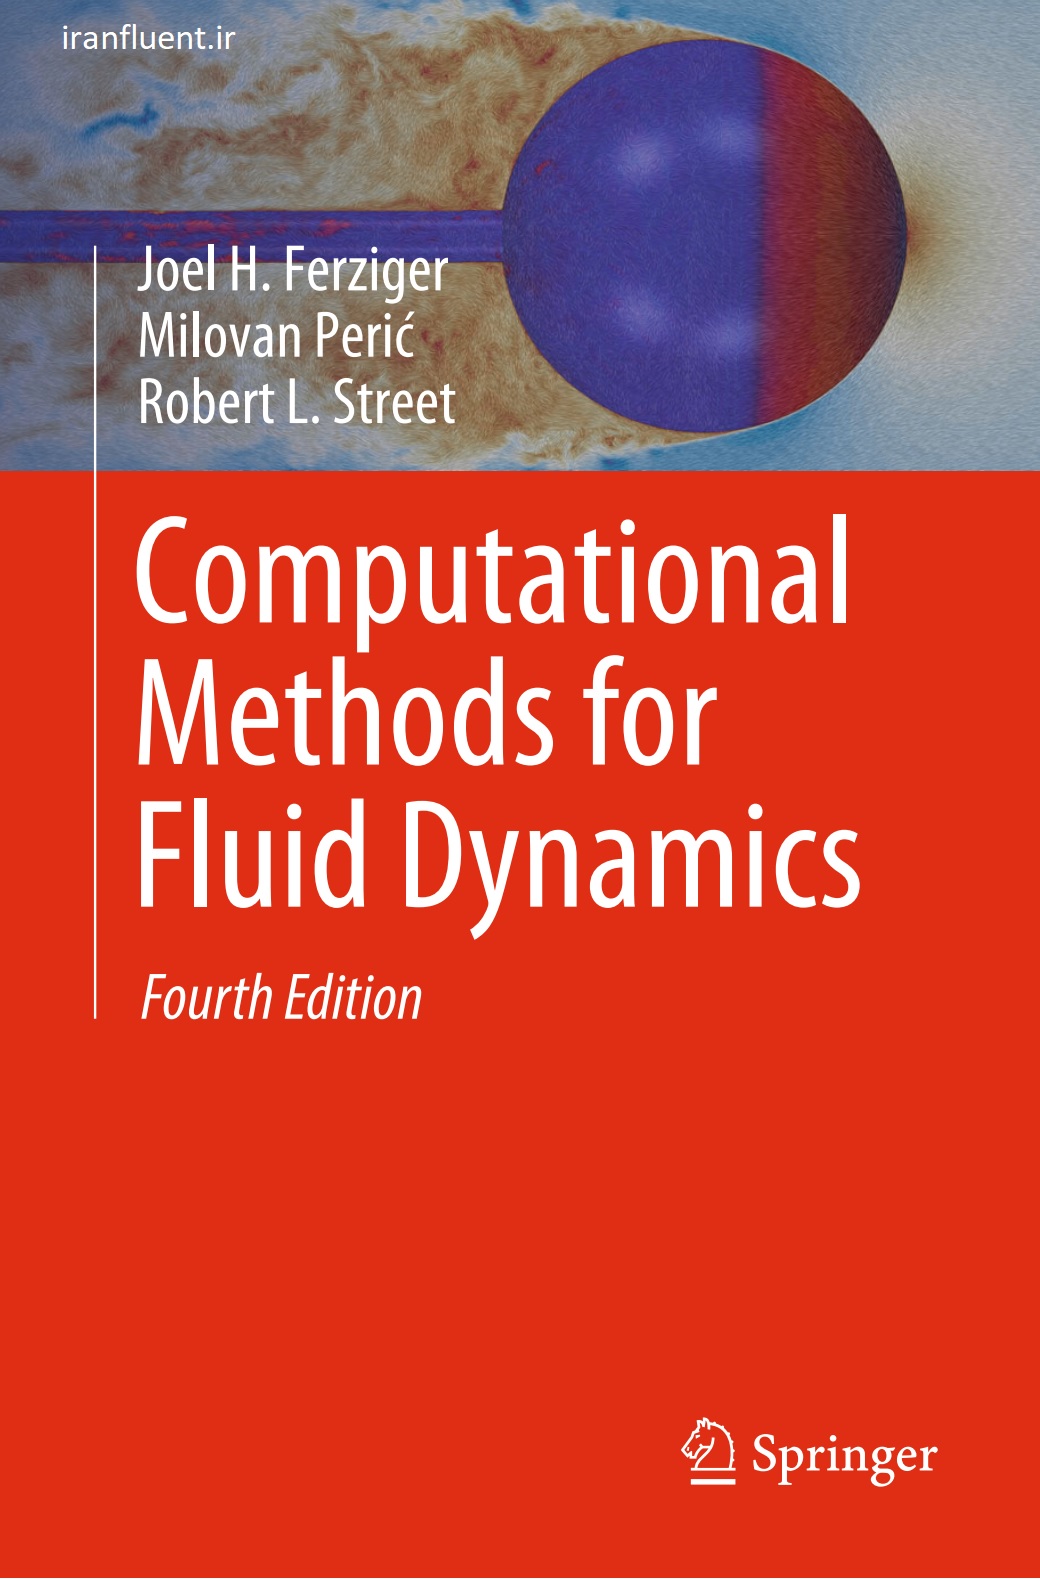 https://bayanbox.ir/view/1810052981396730457/Joel-H.-Ferziger-Milovan-Peric-Robert-L.-Street-Computational-Methods-for-Fluid-Dynamics-Springer-International-Publishing-2020-iranfluent.ir.jpg